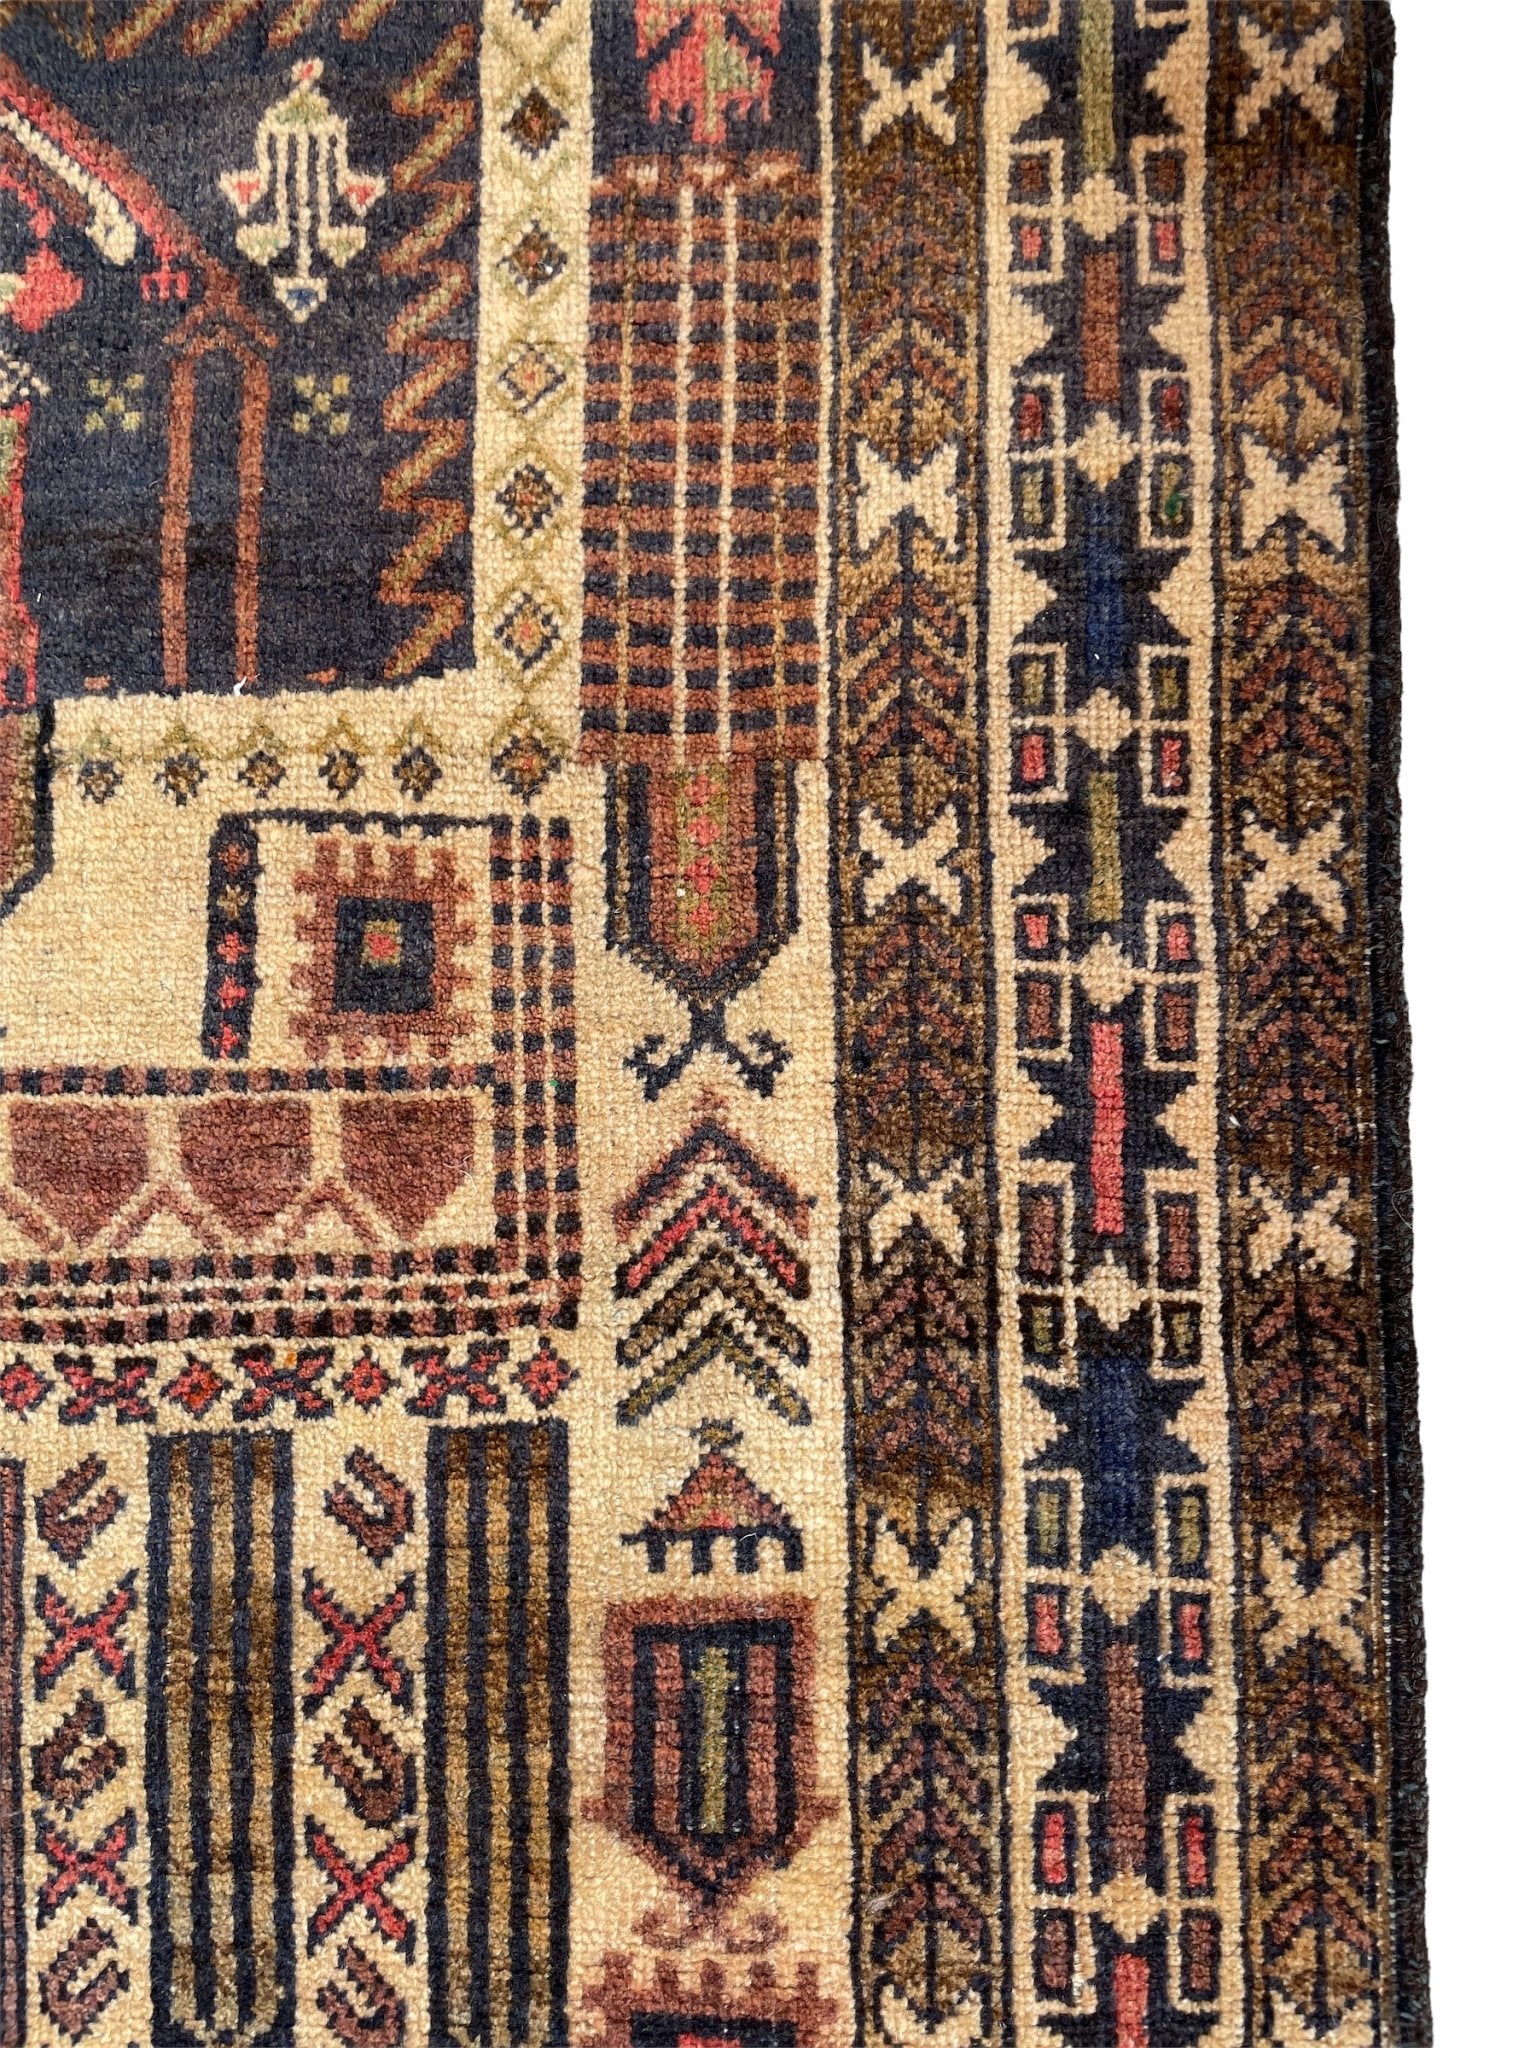 Niyya 100% Wool Handmade Prayer Rug by Asrār Collection 2'9" x 4'5"